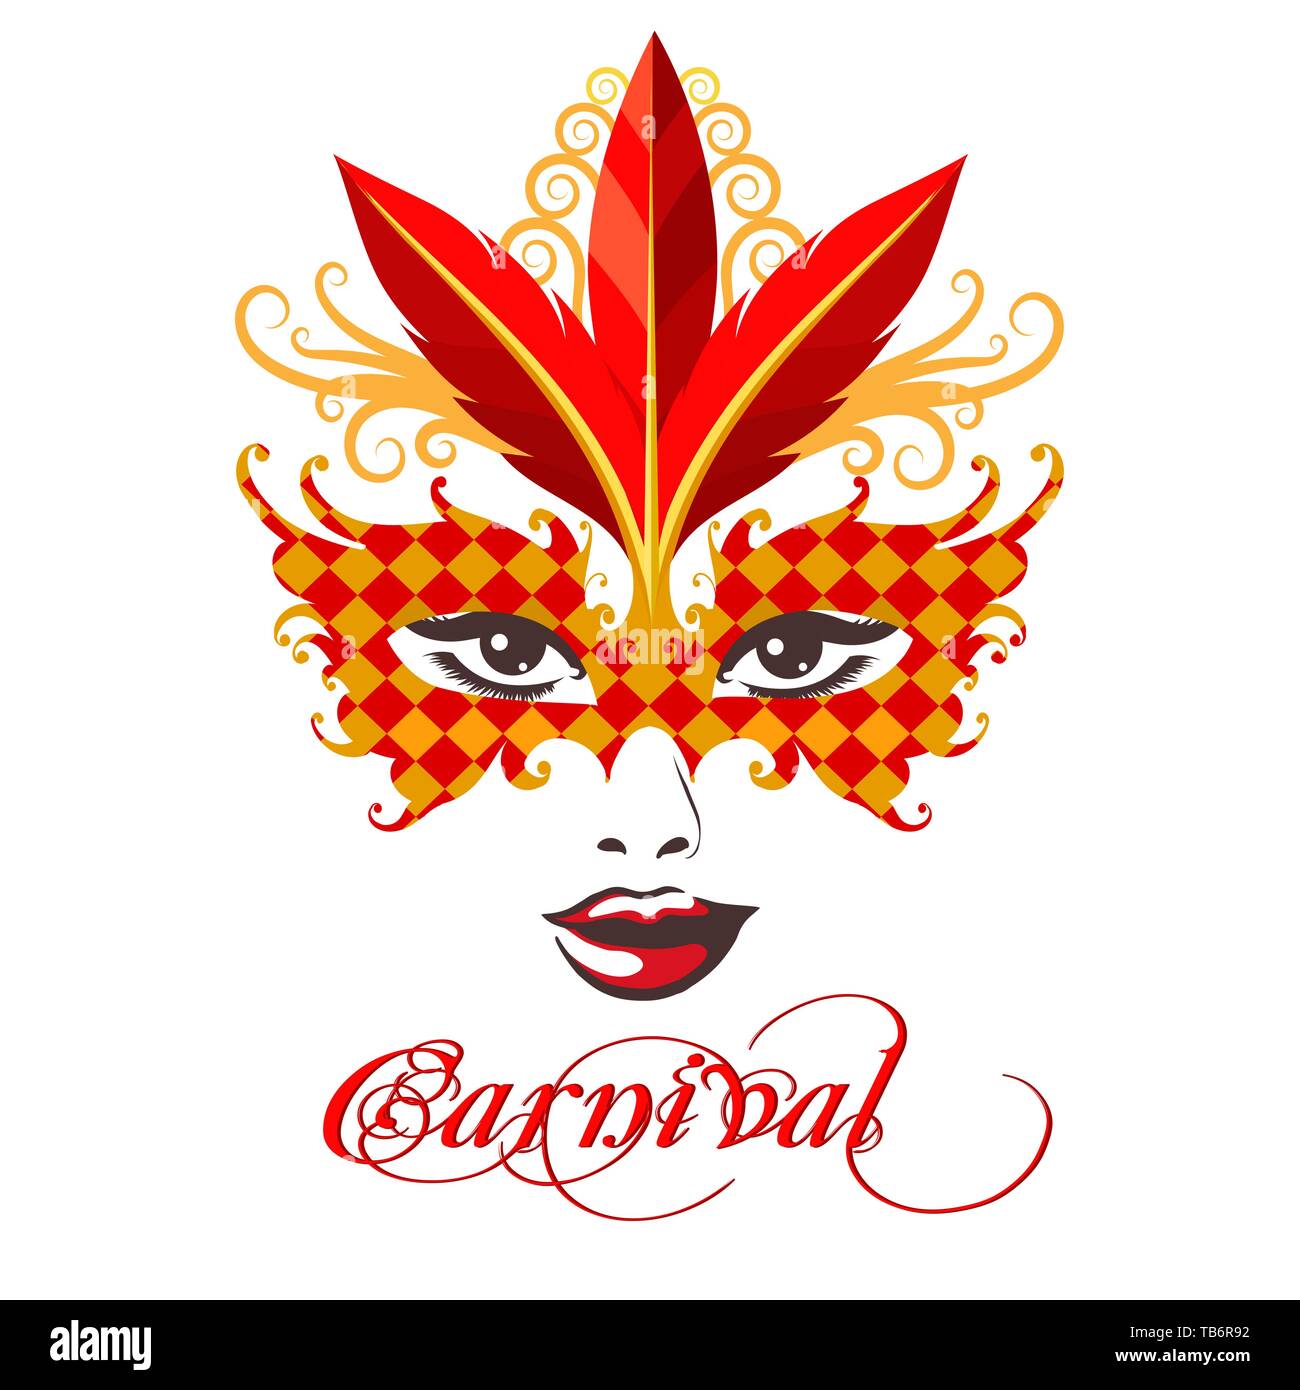 Weibliche Gesicht in Gold und Rot venezianischen Karneval Maske und Formulierung Karneval. Vector Illustration. Stock Vektor